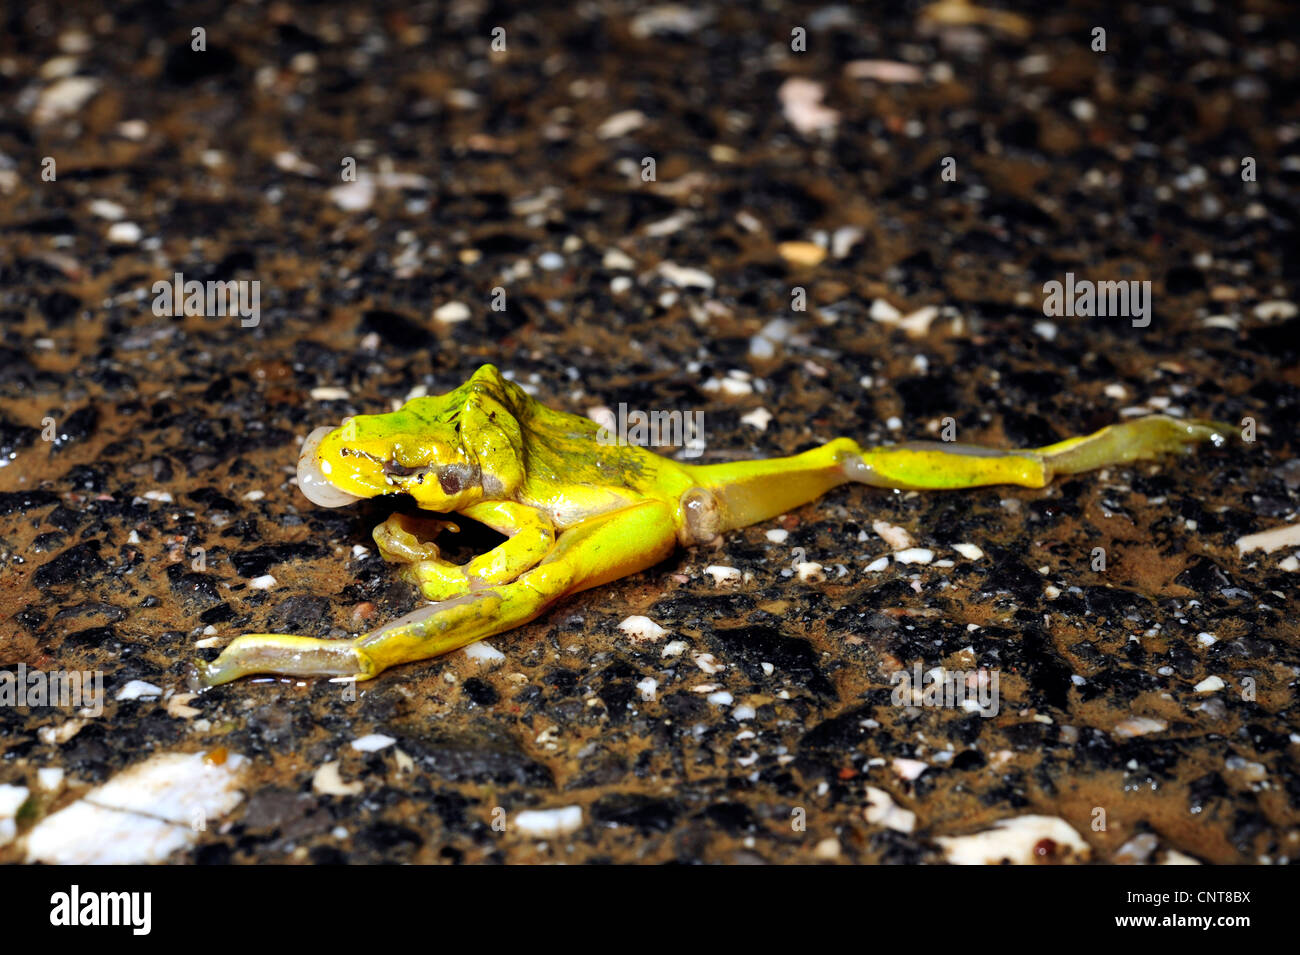 Europäische Treefrog, gemeinsame Treefrog, zentralen europäischen Treefrog (Hyla Arborea), auf einer Straße getötet durch Autos, Griechenland, Peloponnes, Natura 2000 Gebiet Gialova Lagune, Gialova Stockfoto